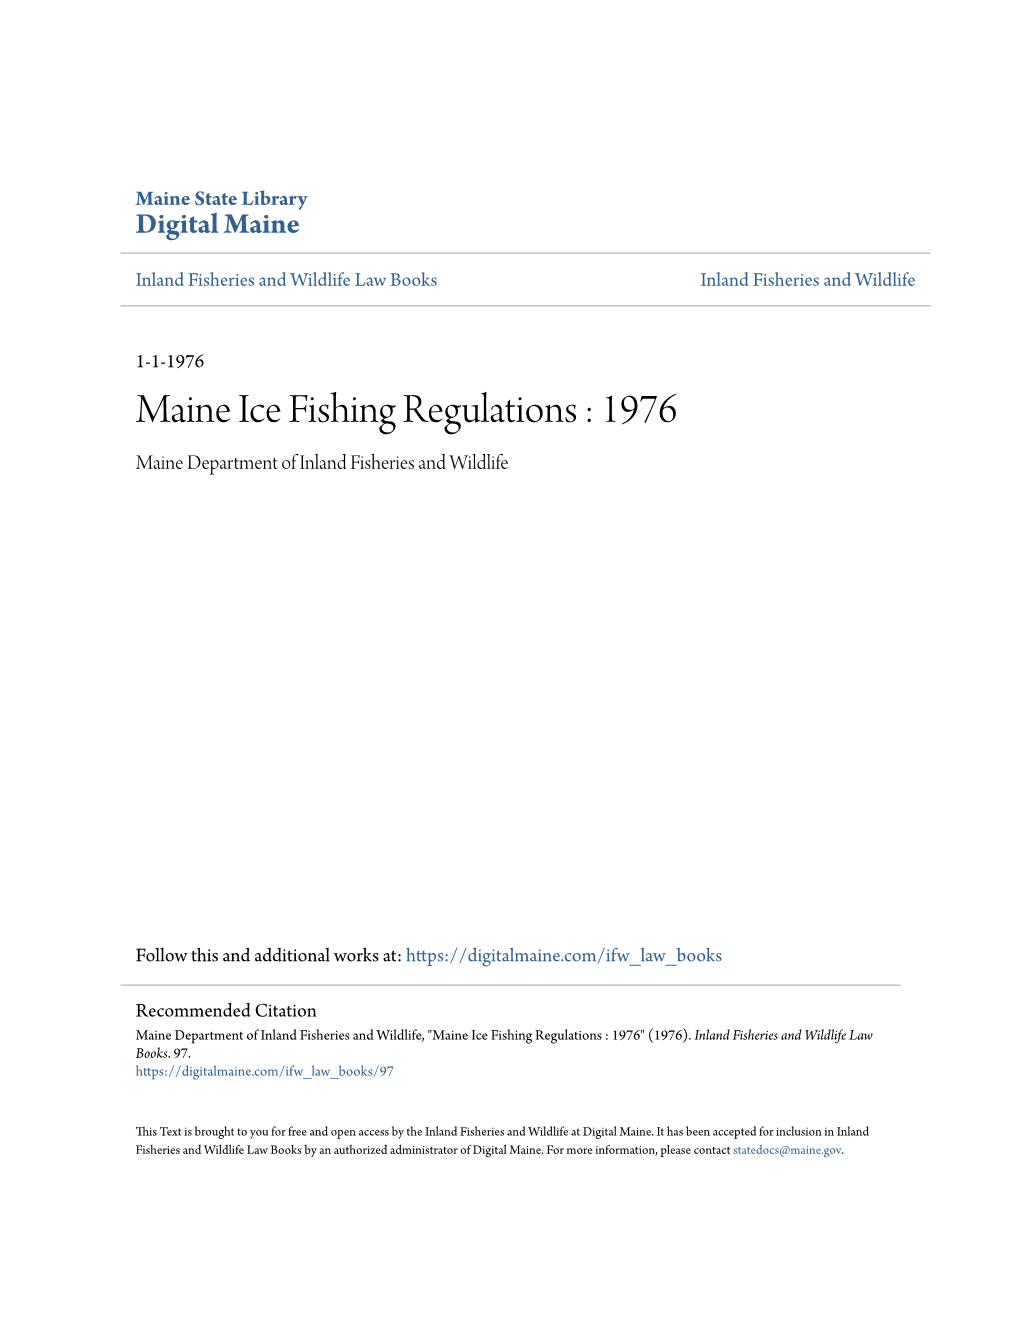 Maine Ice Fishing Regulations : 1976 Maine Department of Inland Fisheries and Wildlife